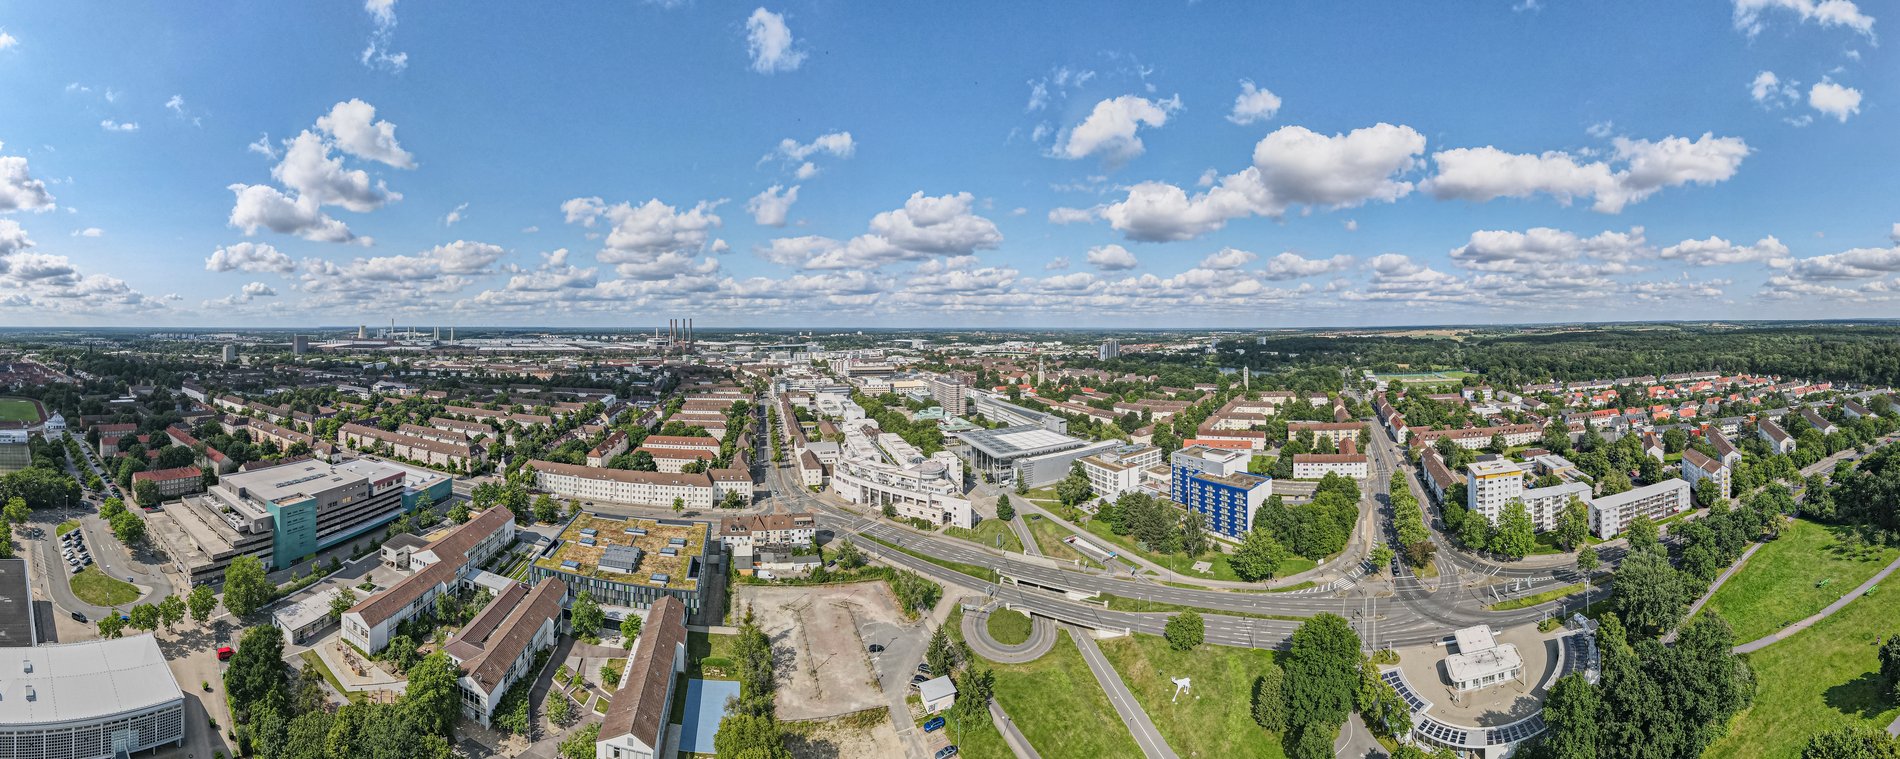 Man blickt aus der Luft über das Wolfsburger Stadtgebiet. Im Hintergrund ist vor allem Das Volkswagen-Werk zu erkennen. 